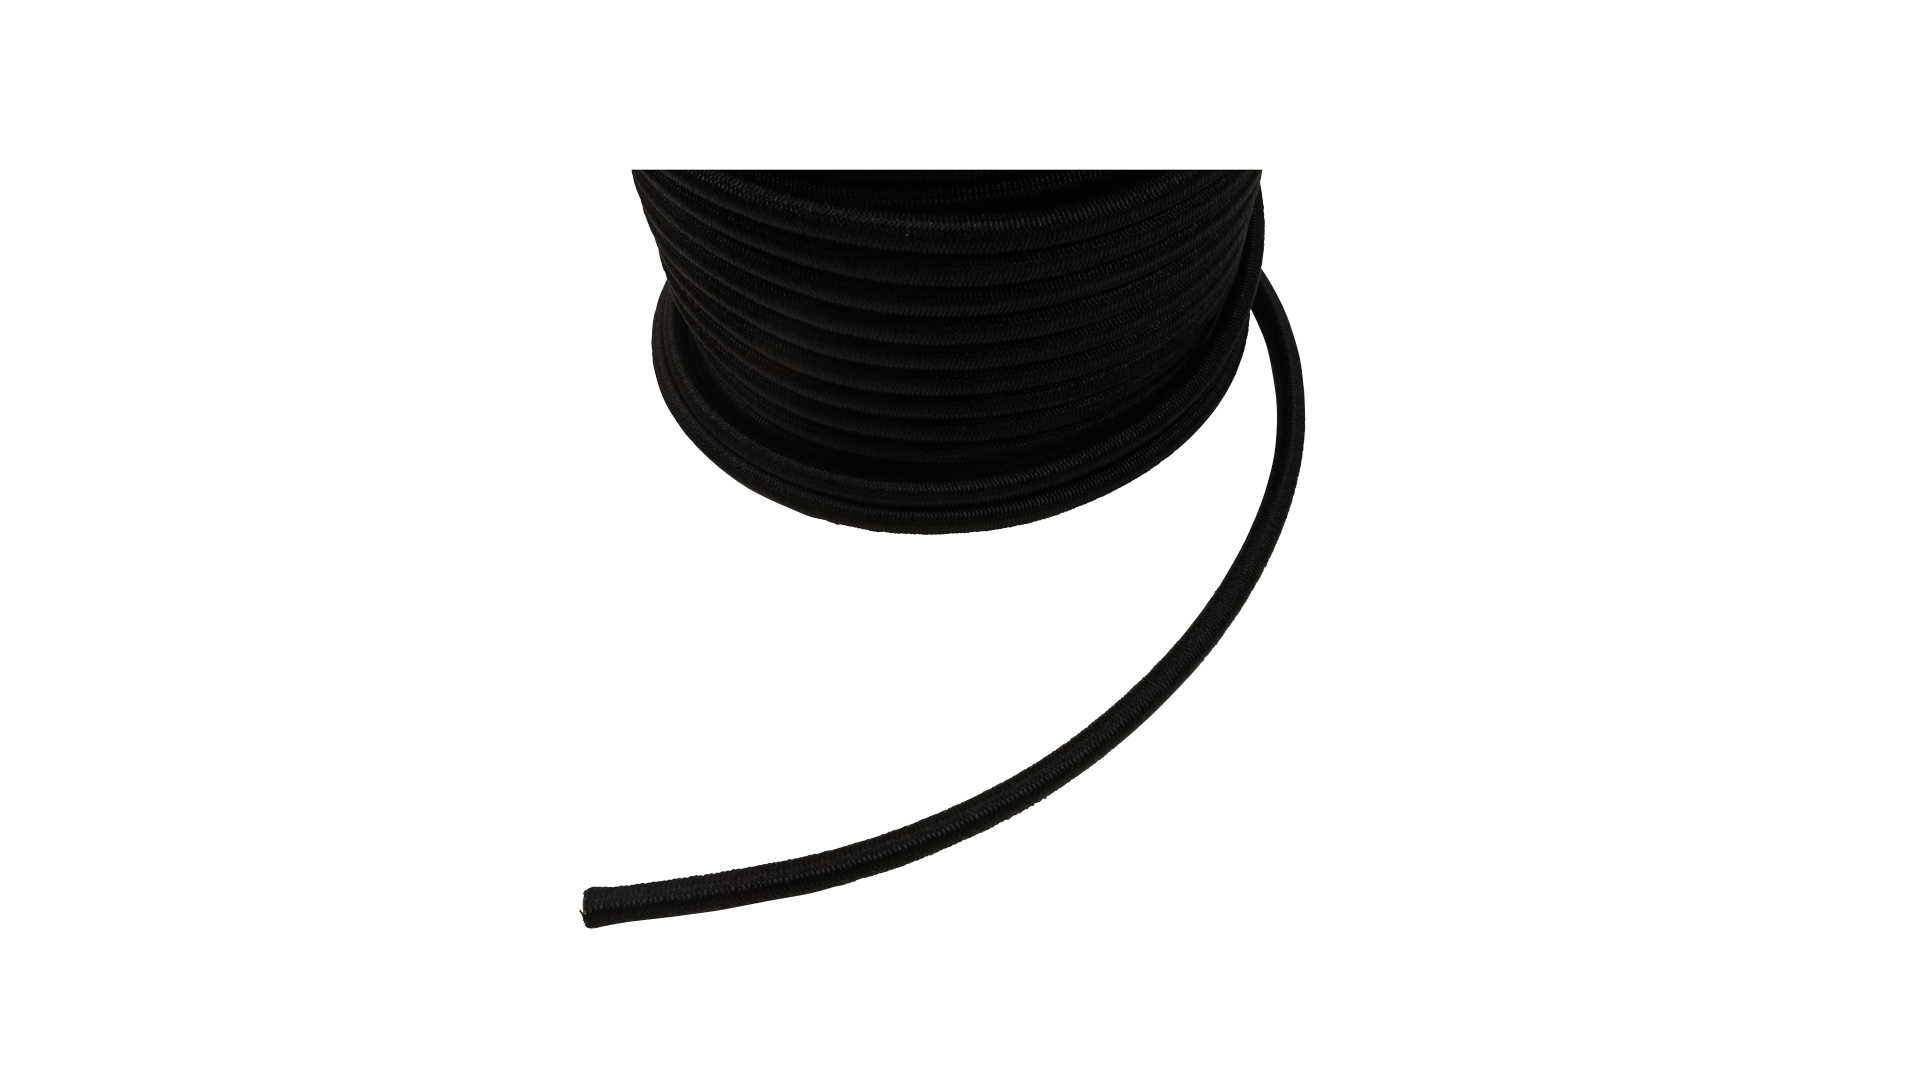 Anhängerersatzteil Gummi-Expander-Seil schwarz, 8 mm stark